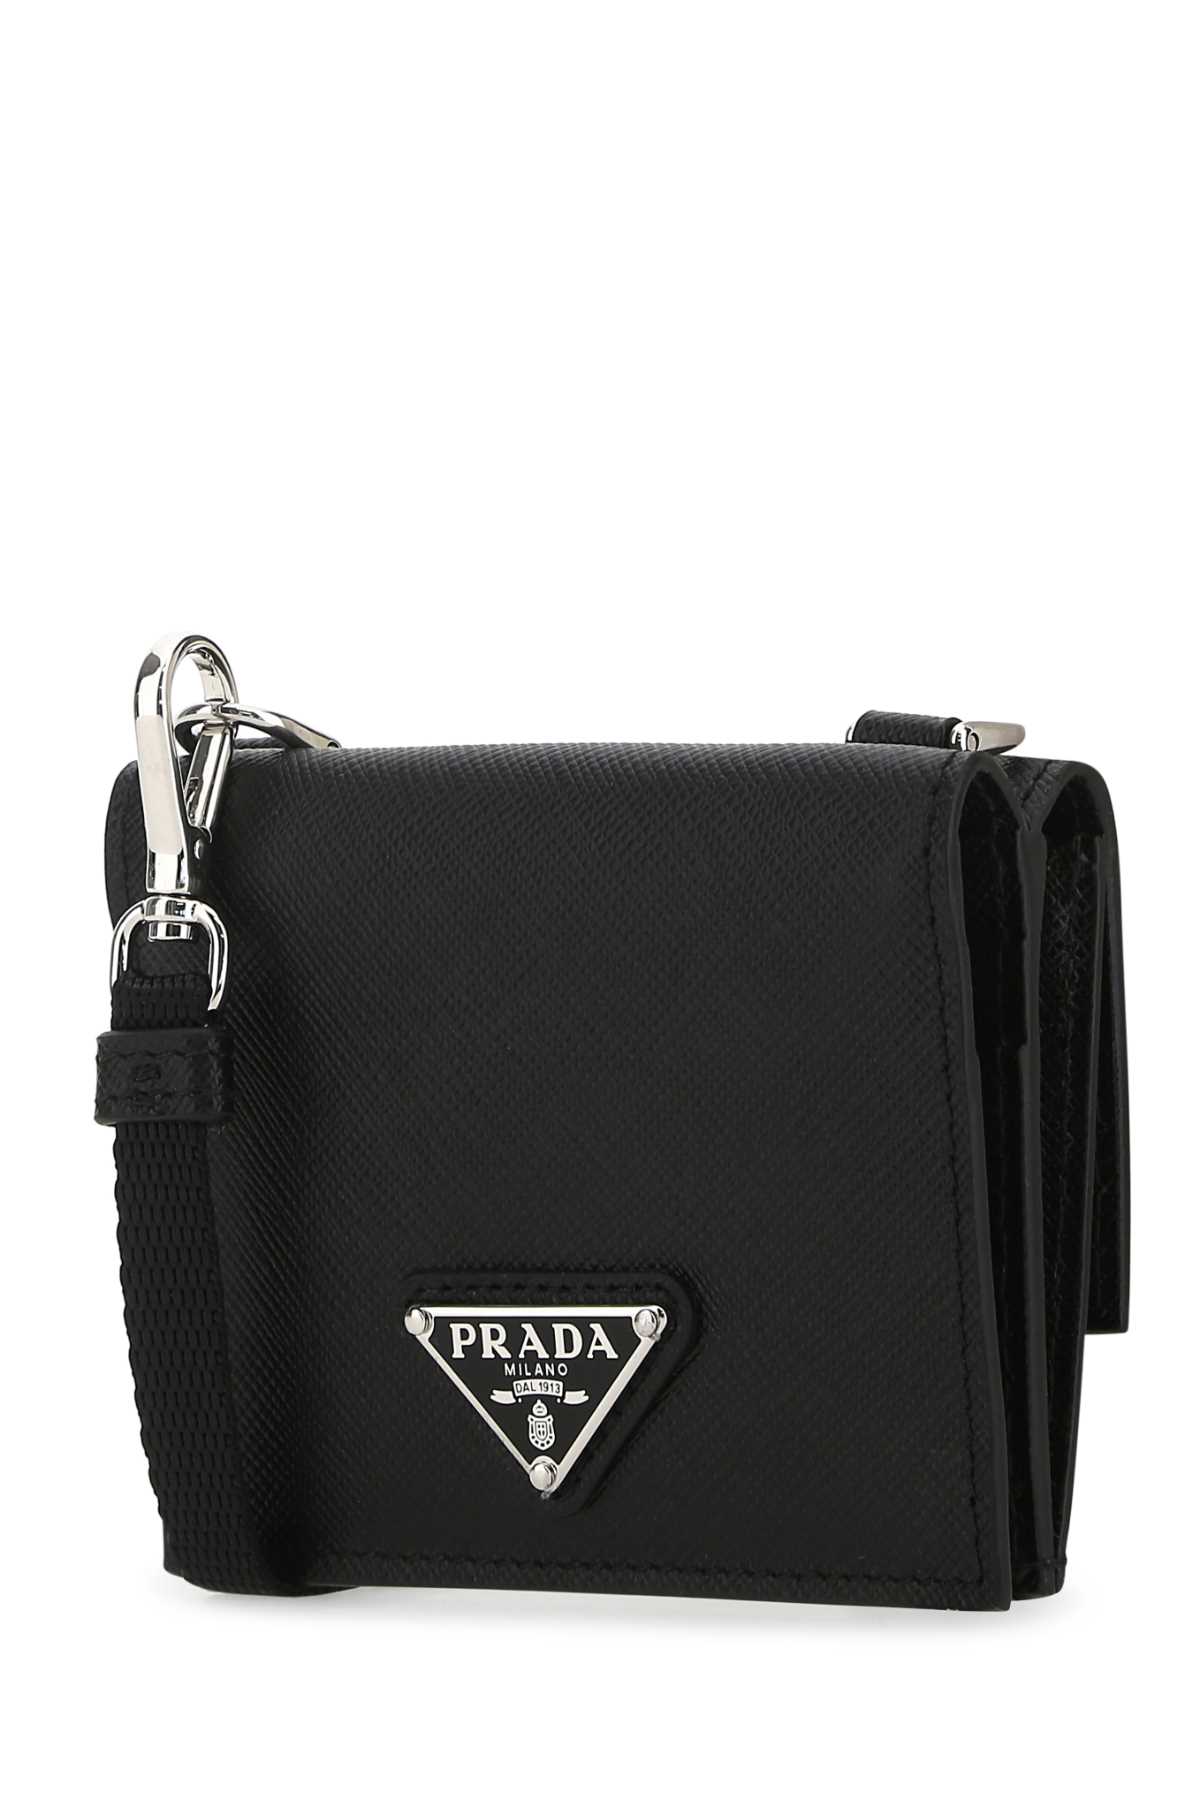 Shop Prada Black Leather Cardholder In F0002